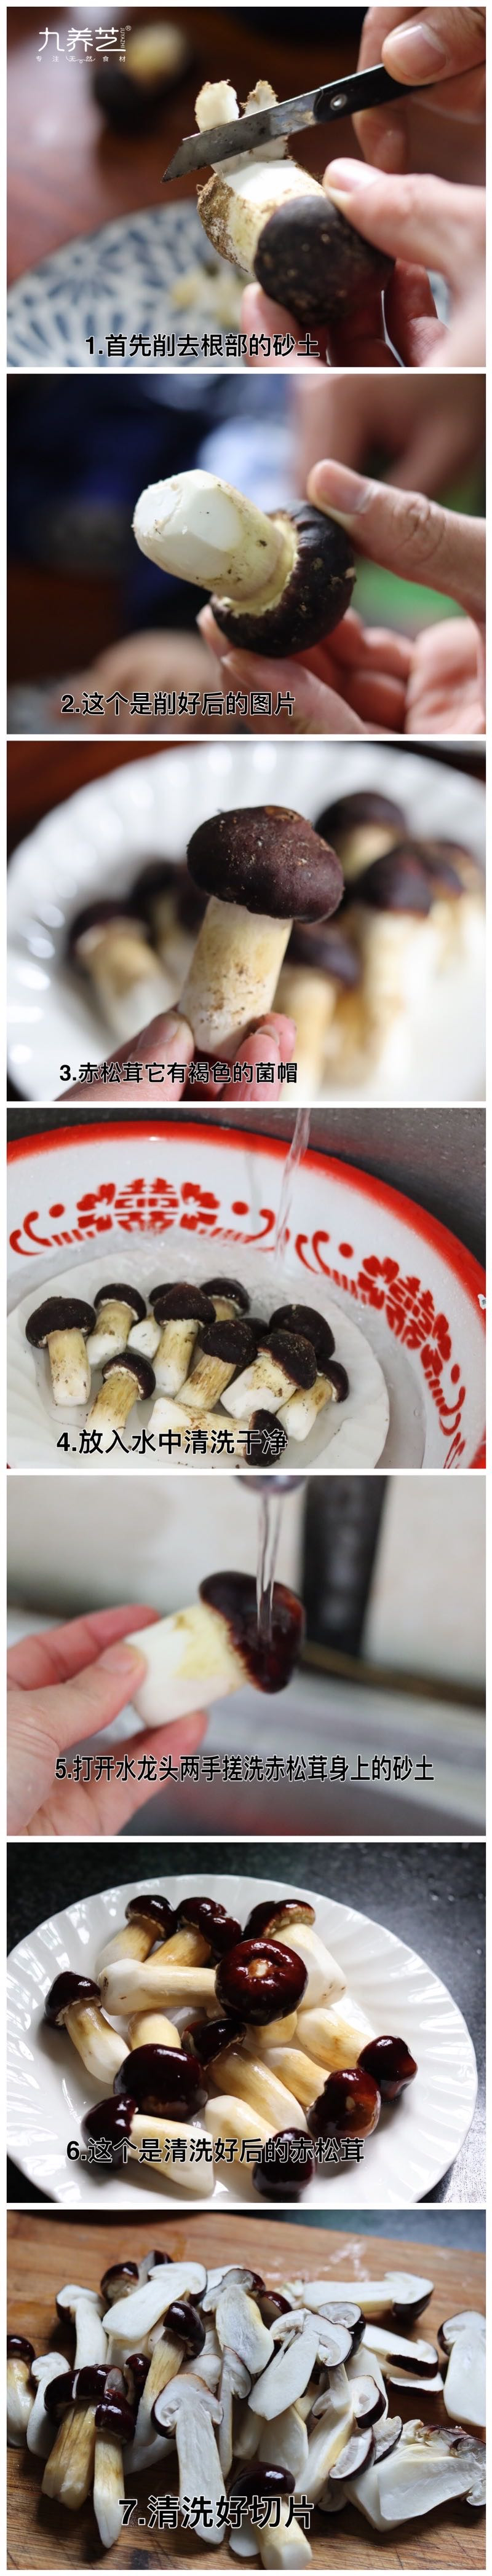 九养芝 新鲜现摘赤松茸姬2斤 九养芝 赤松茸 鲜蘑菇煲汤火锅菌菇包